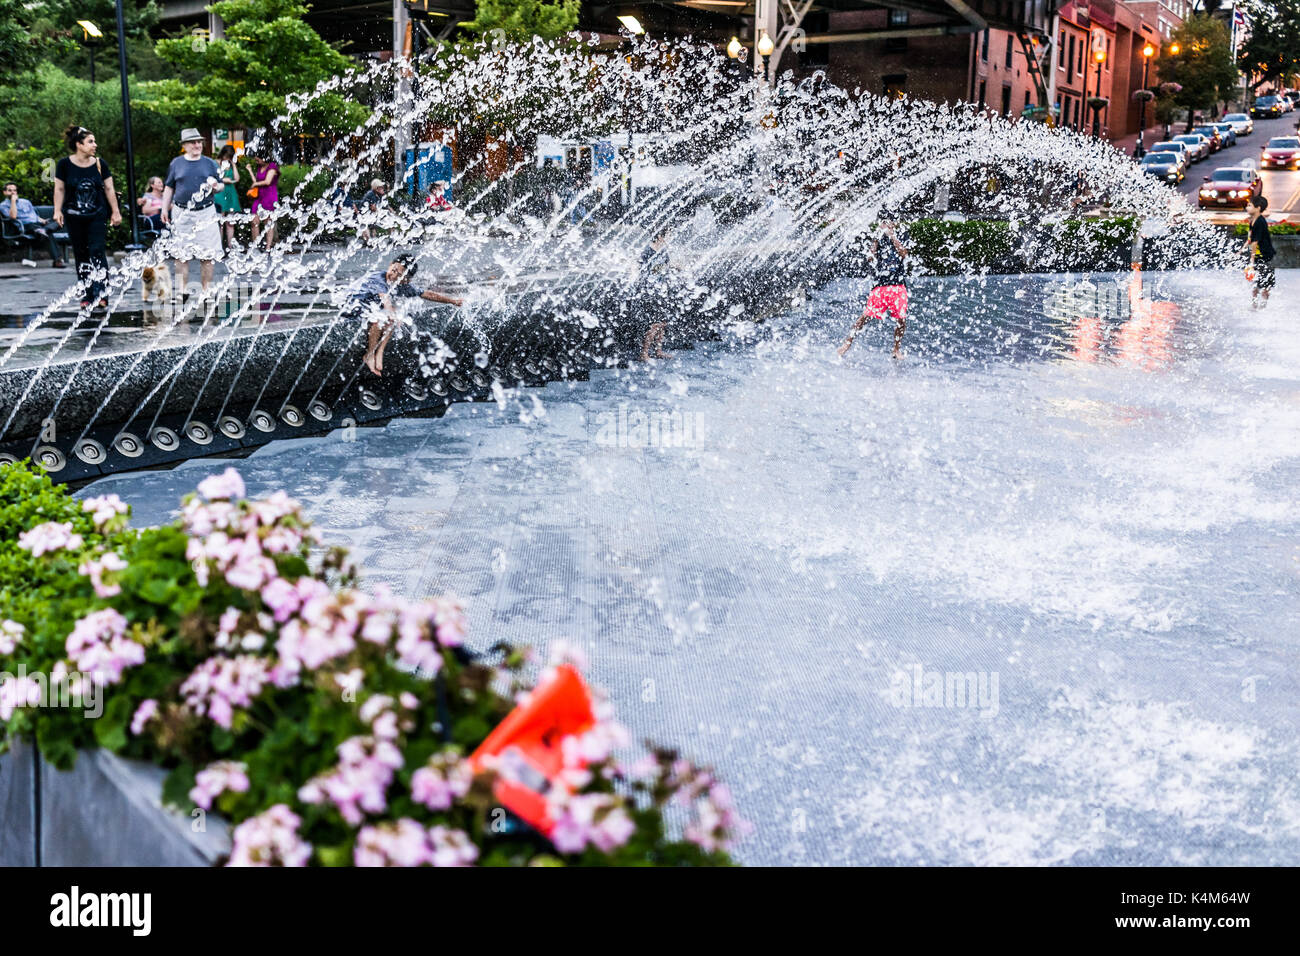 Washington DC, USA - 4 août 2017 : de jeunes enfants jouant dans l'eau Fontaine à Georgetown park en soirée avec les éclaboussures d'eau Banque D'Images